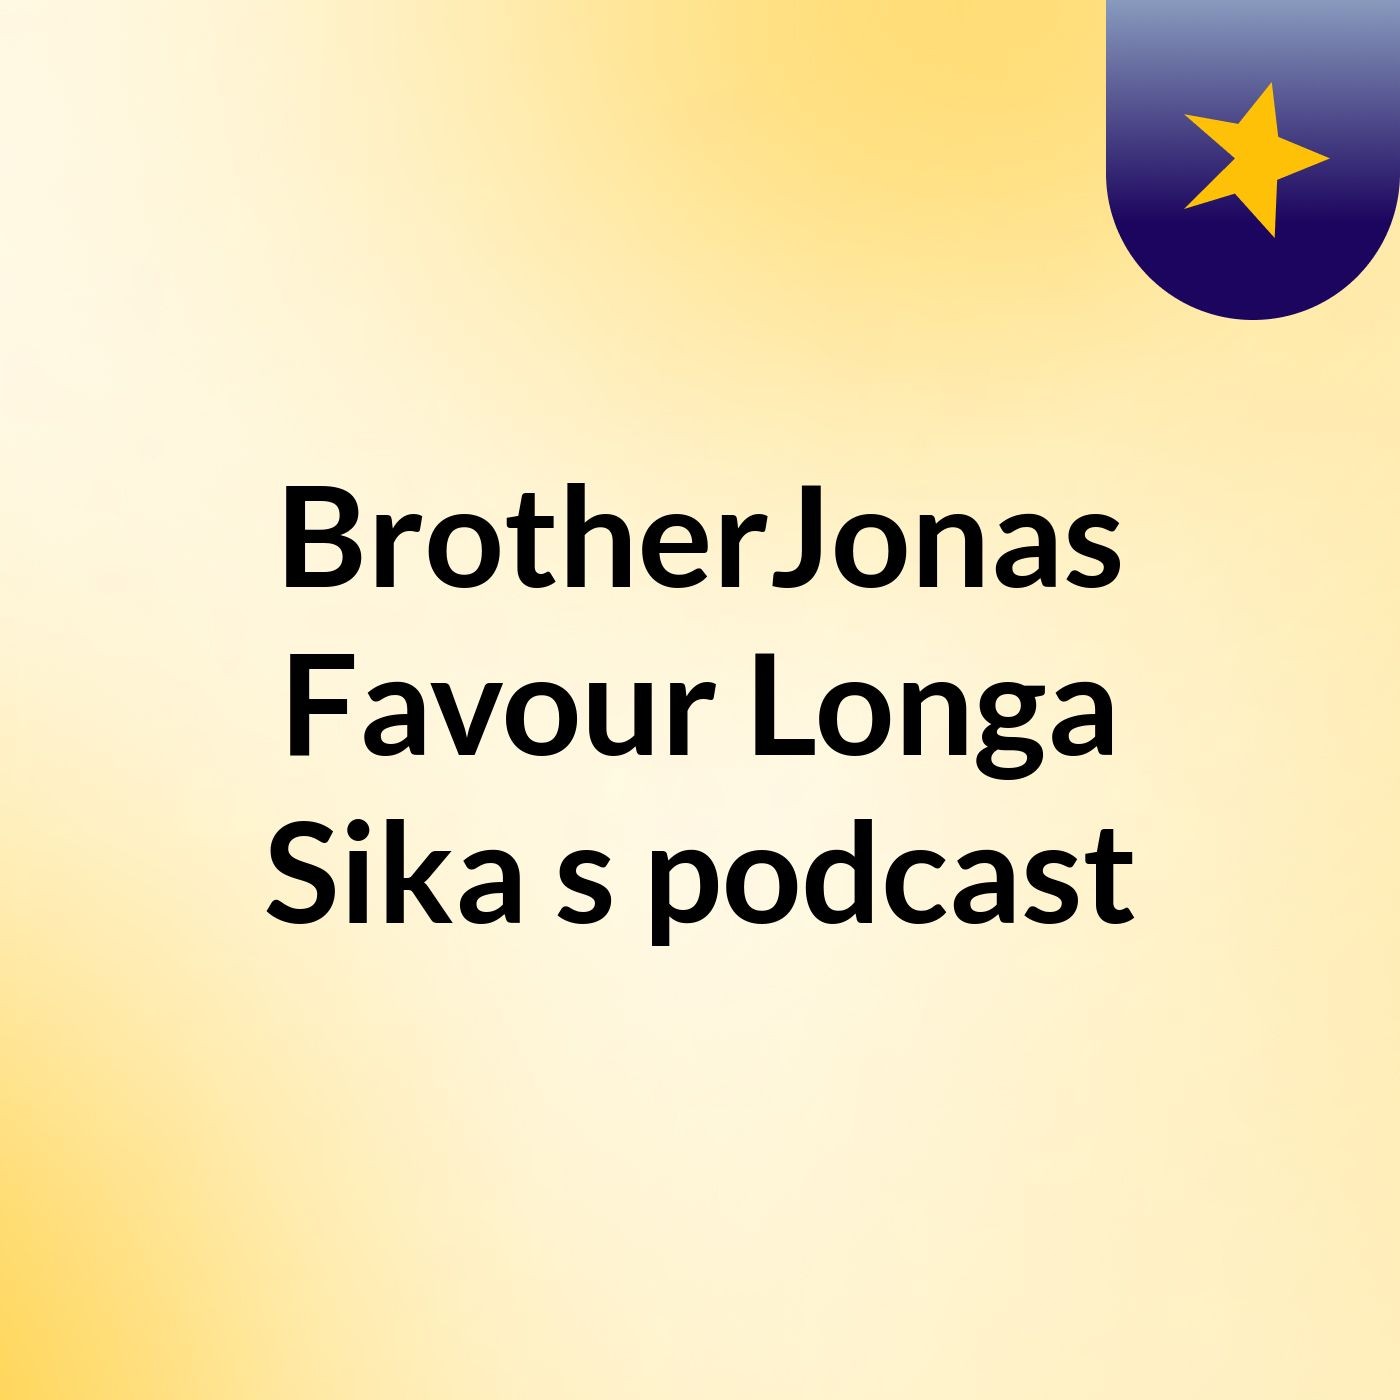 BrotherJonas Favour Longa Sika's podcast